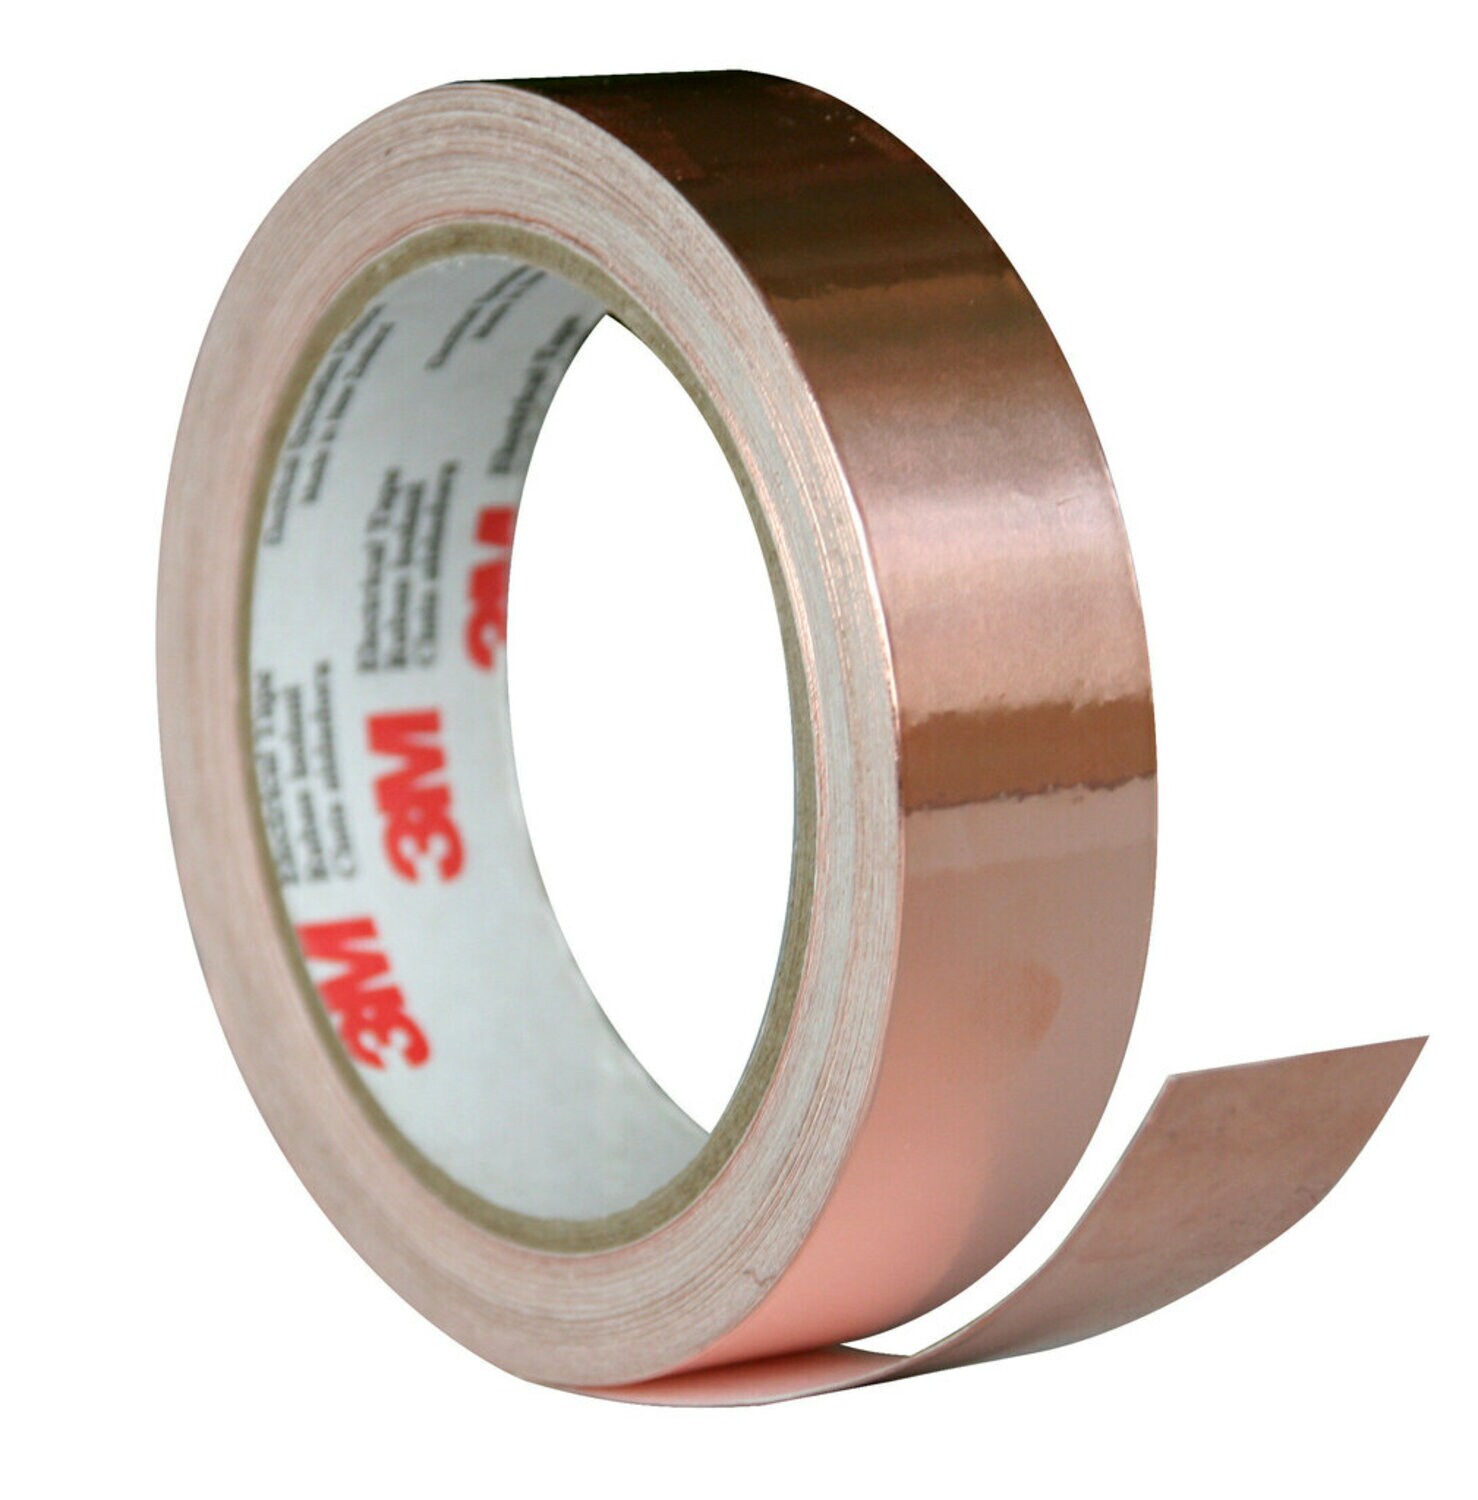 7010398758 - 3M 1181 Copper Foil EMI Shielding Tape, 1 1/2 in x 18 yd, 3 in paper
core, Mini-case